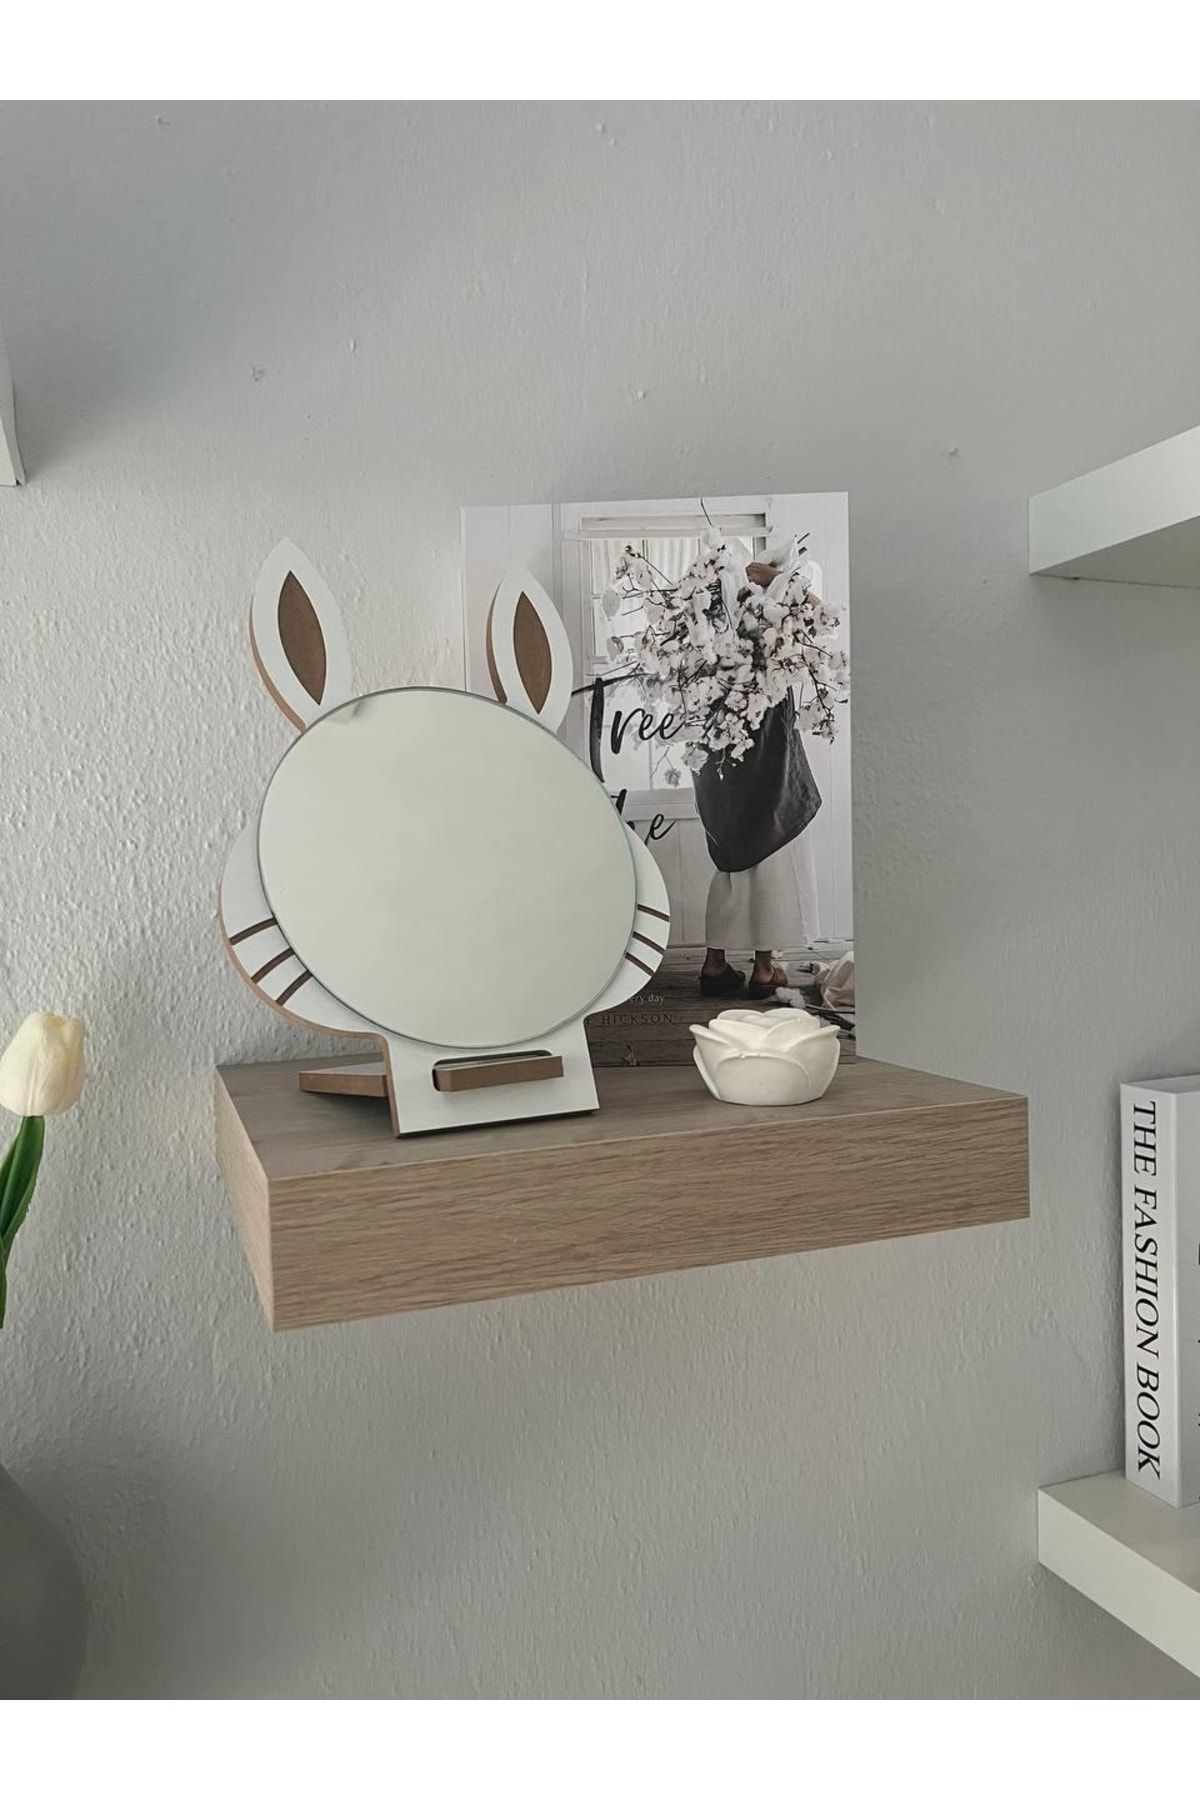 ARCHER Masaüstü Beyaz Renk Hediyelik Dekoratif Makyaj Aynasi,tavşan Kulaklı,sevimli Ayna, Çocuk Ve Genç Ayn